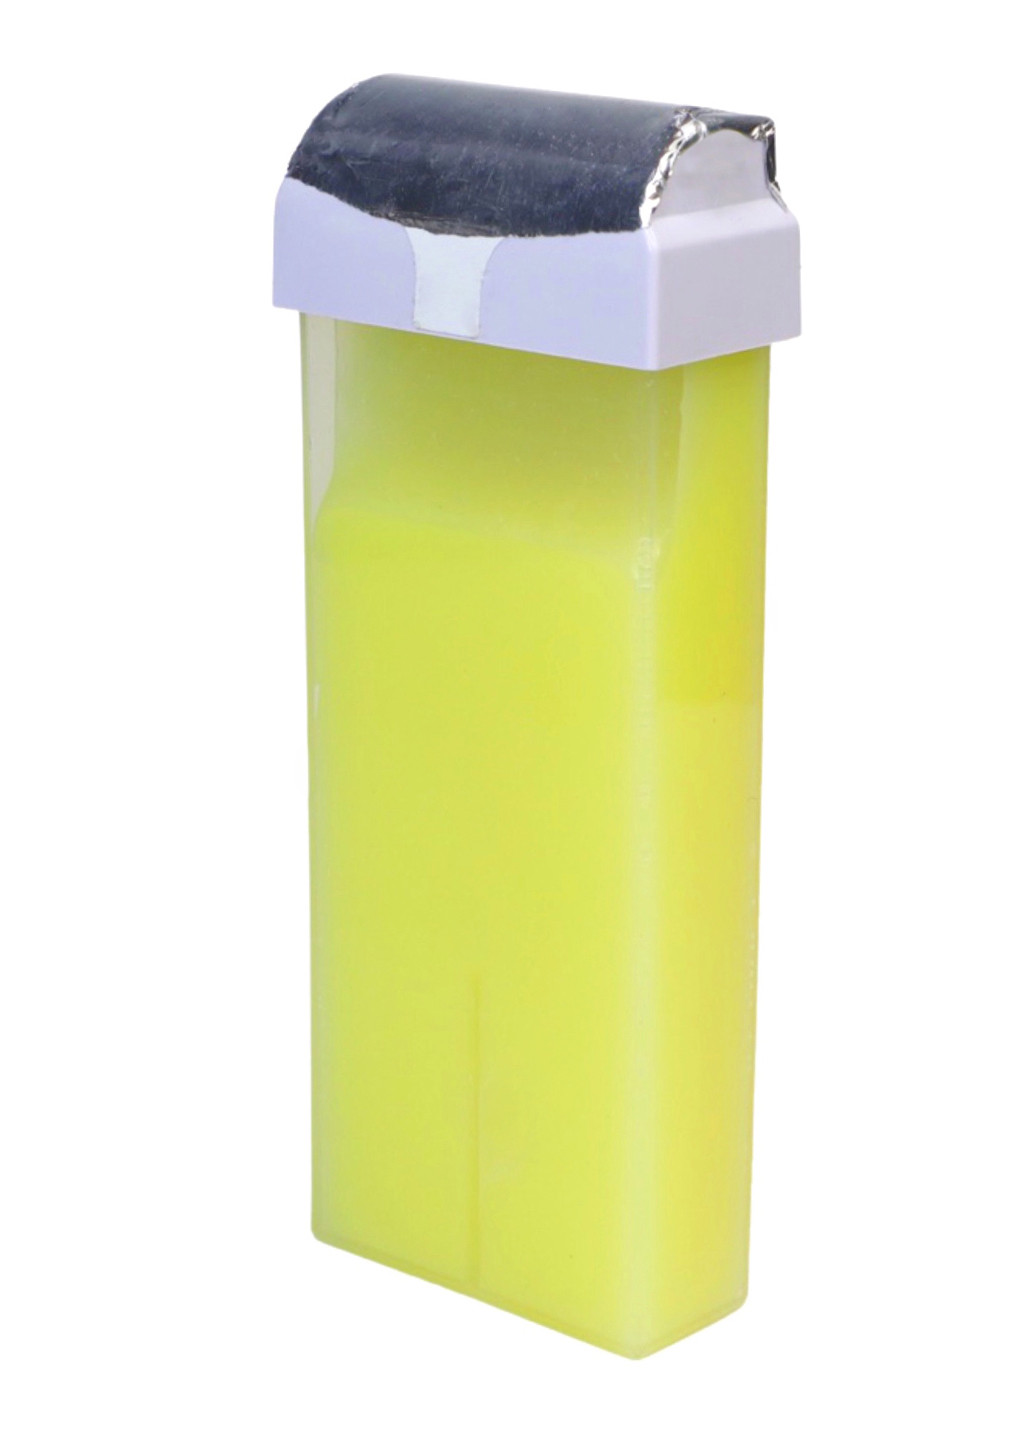 Віск для депіляції Lidan в картриджі 100 мл Лимон UFT (238644752)